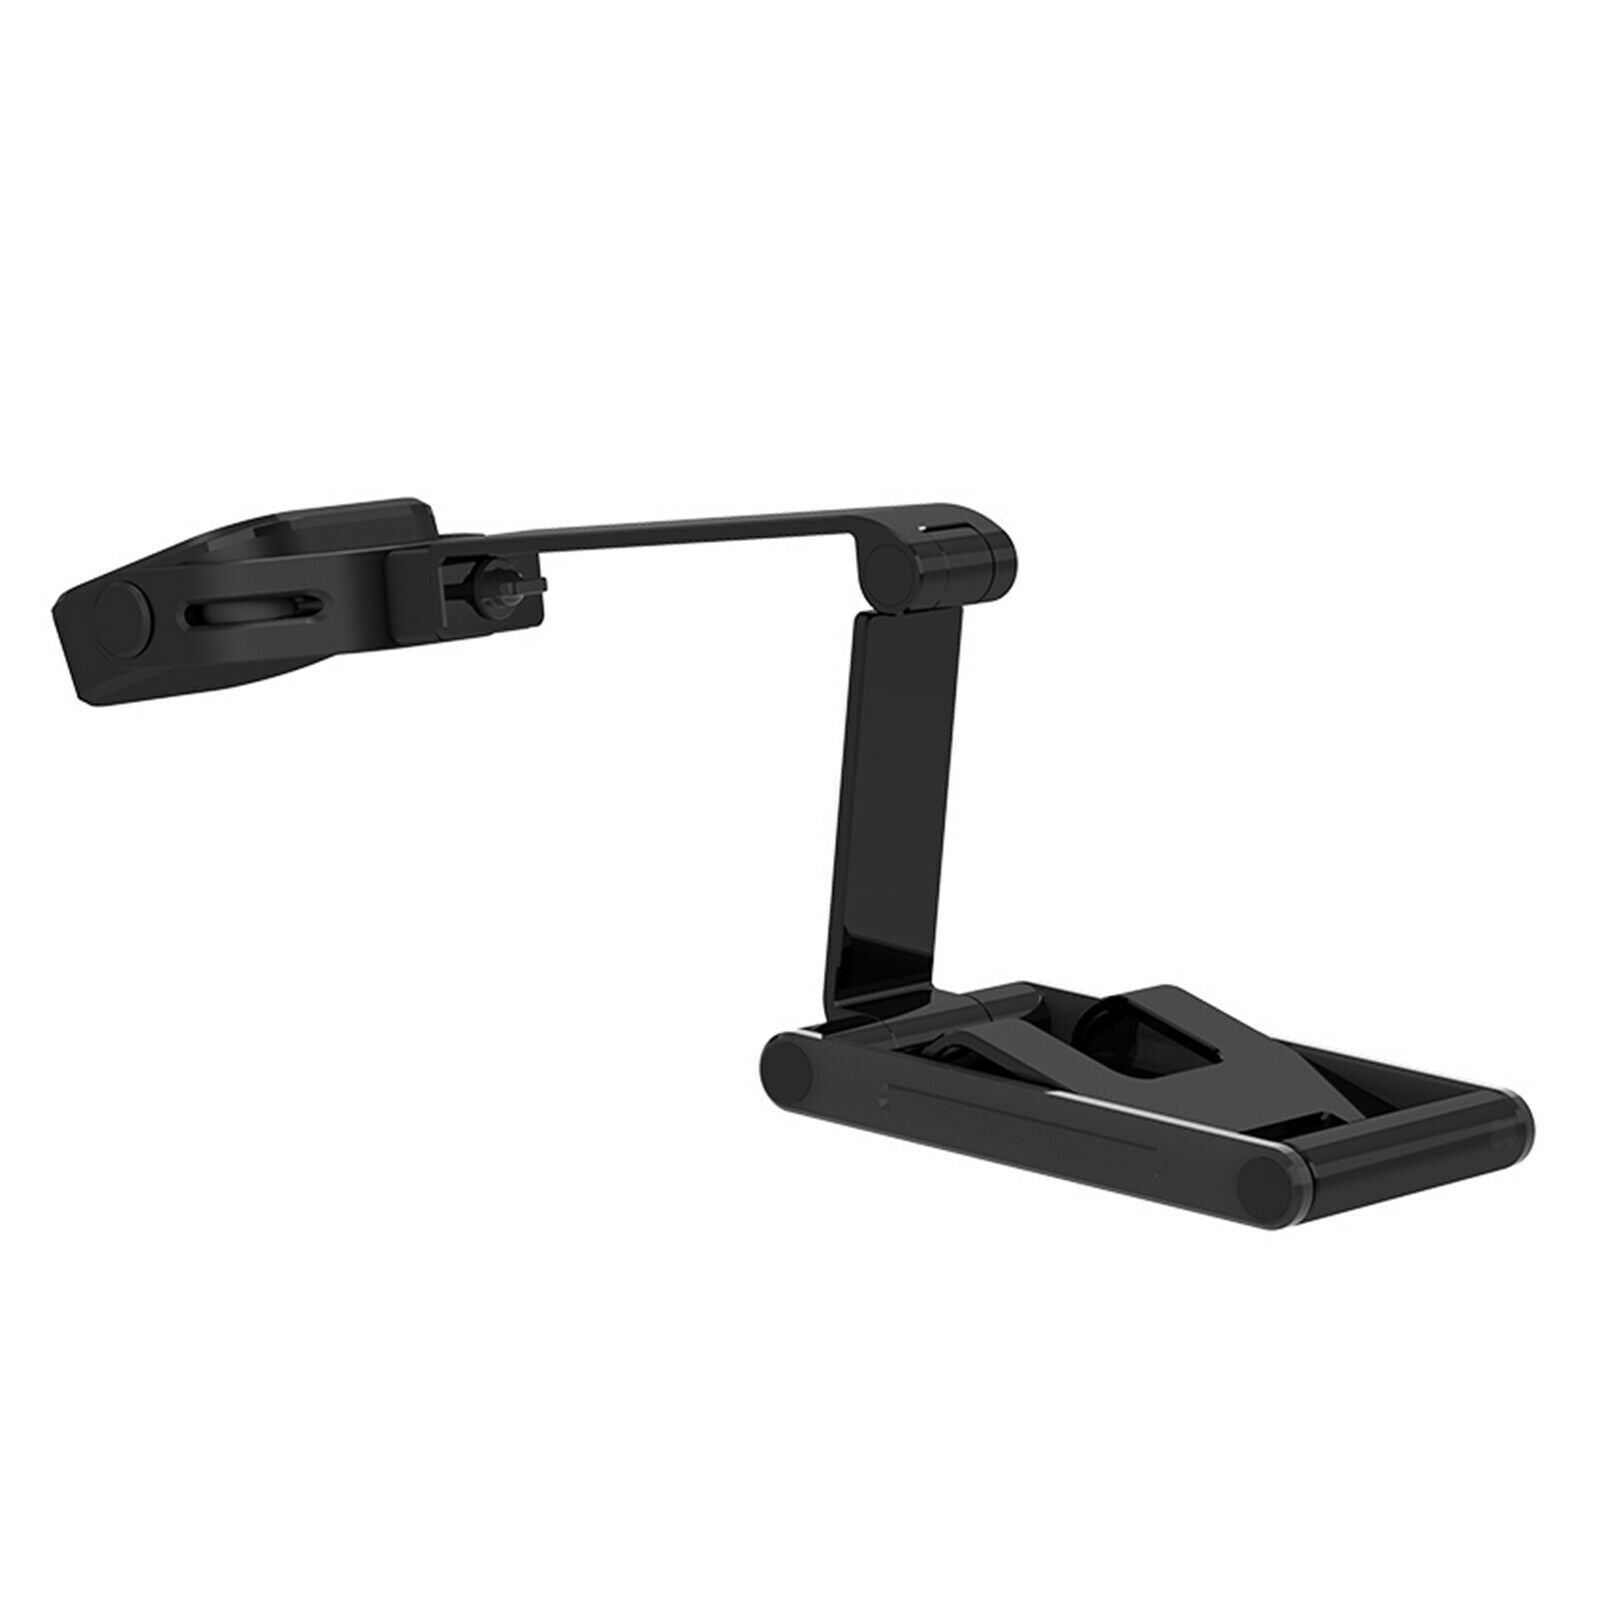 Universal Mobile Phone Tablet Desk Stand Adjustable Bracket Holder Foldable